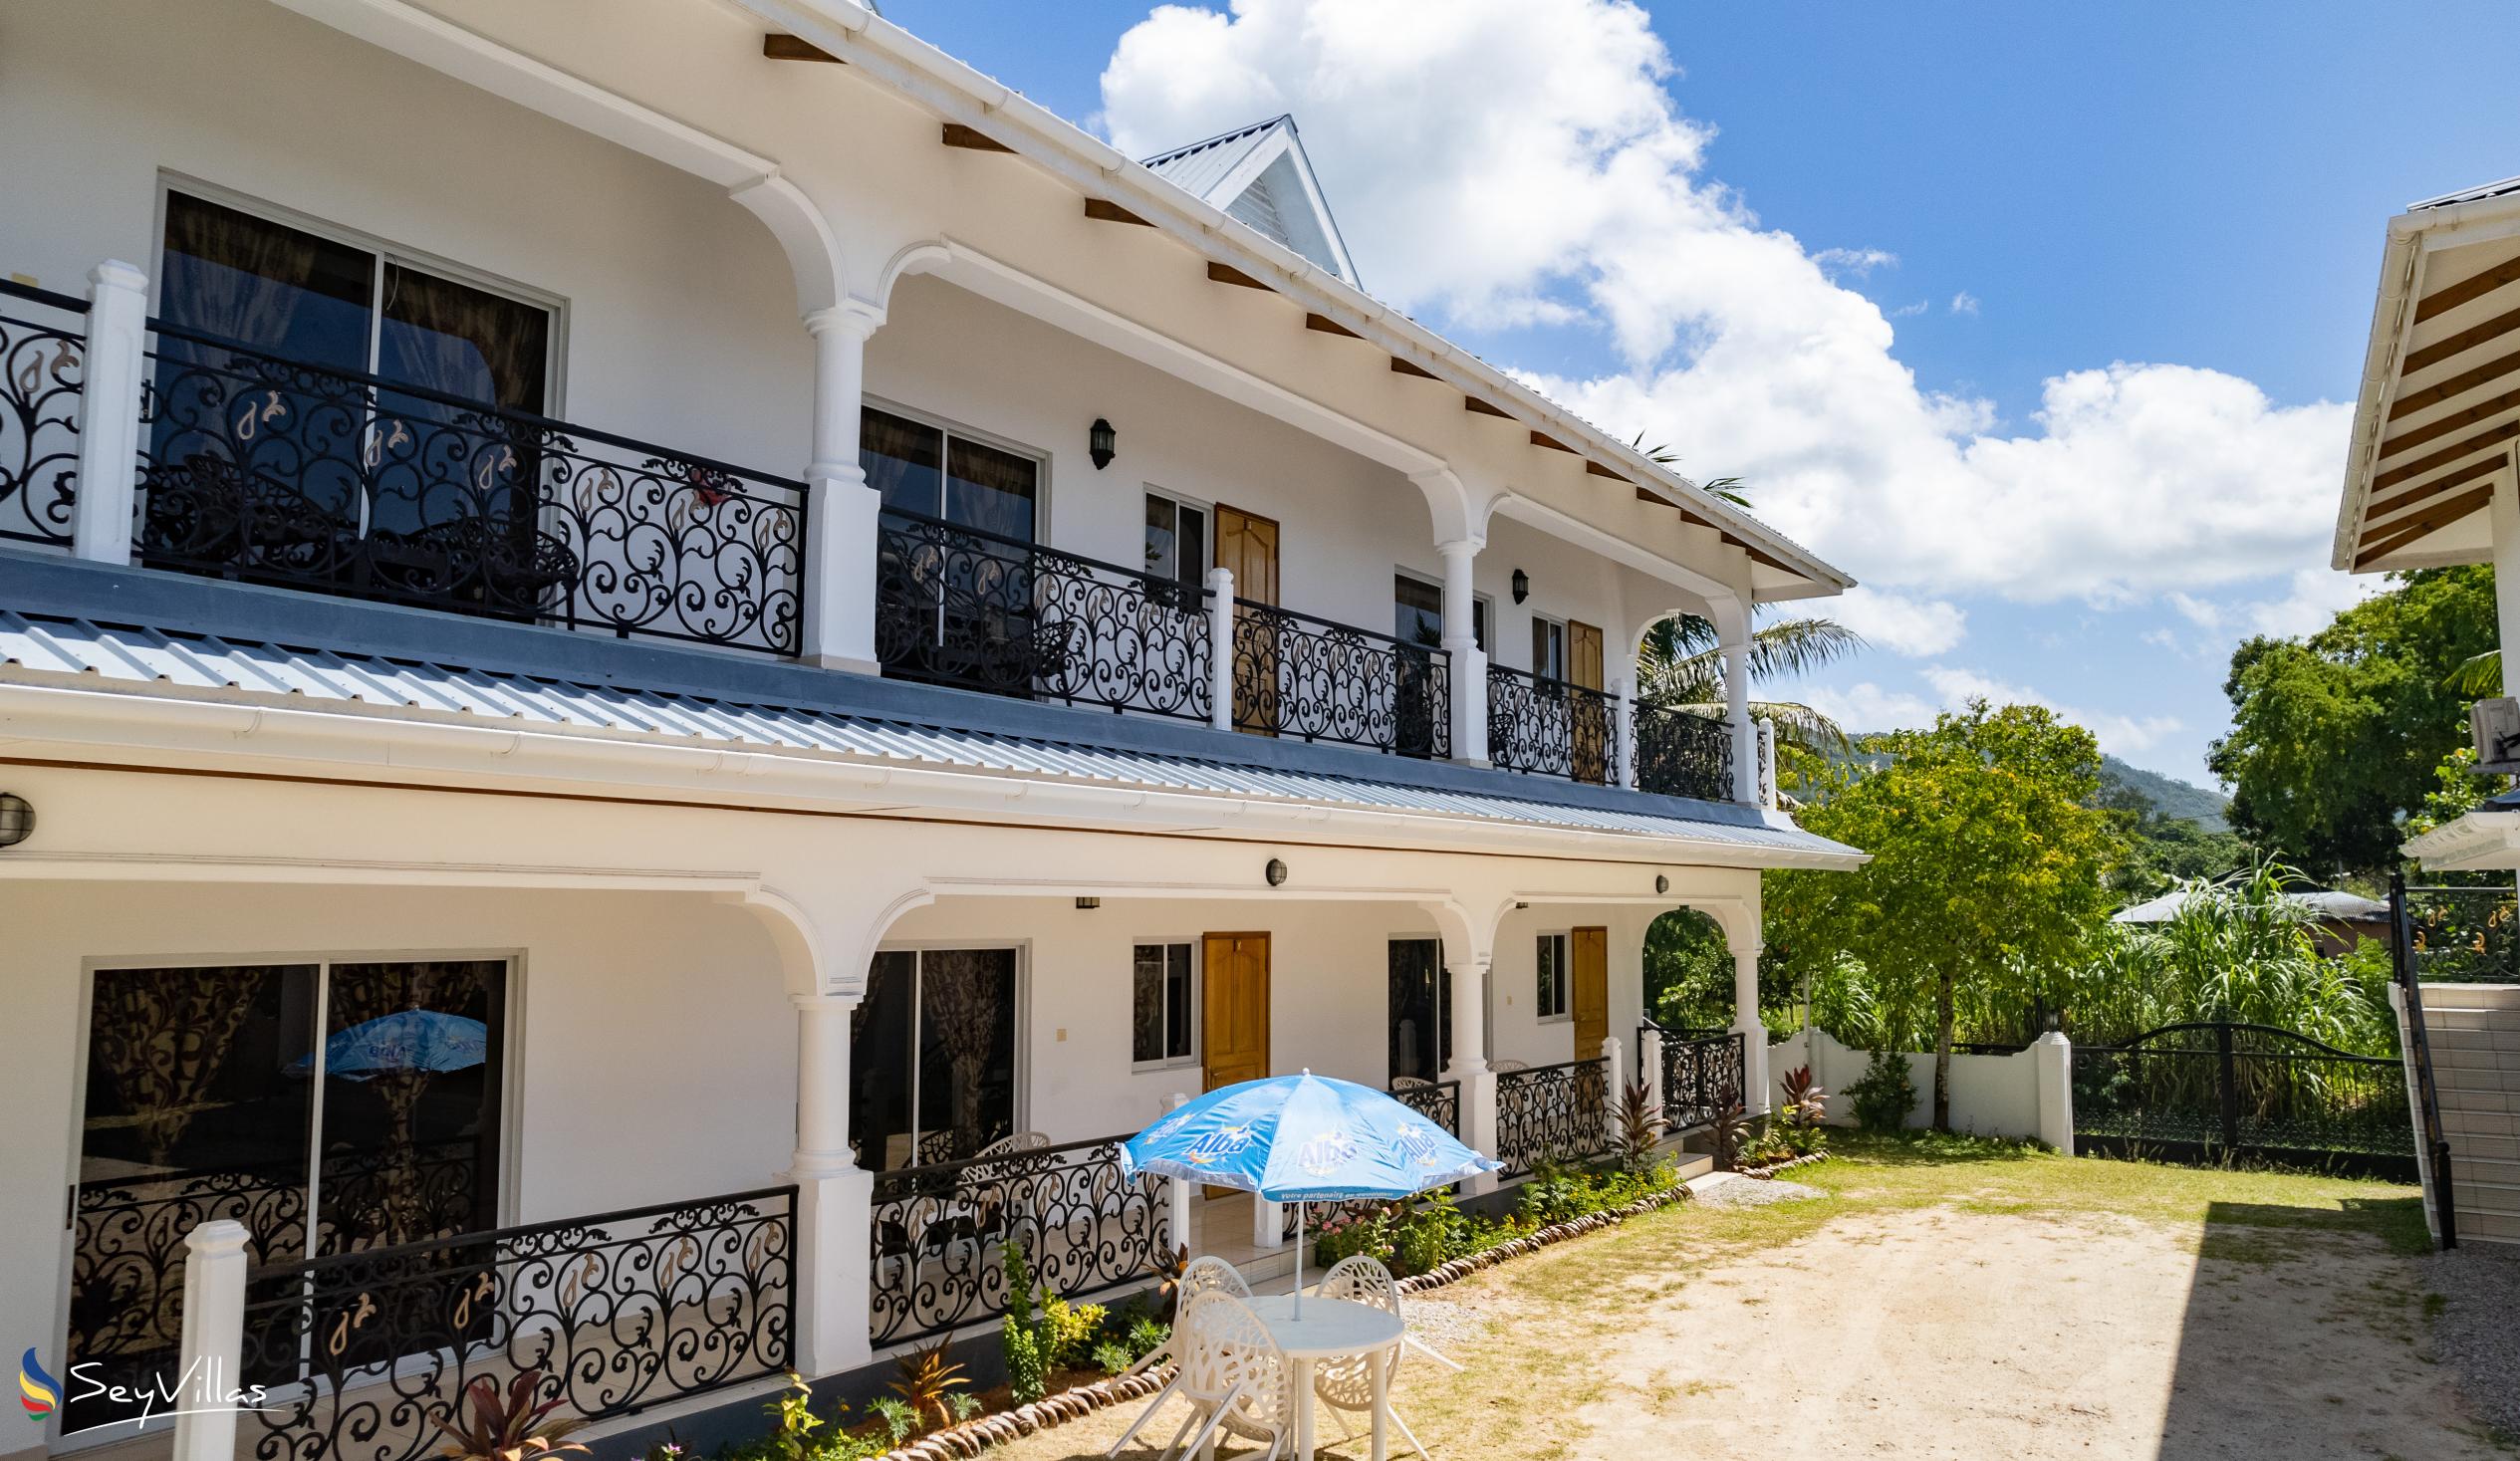 Foto 6: Casadani Luxury Guest House - Aussenbereich - Praslin (Seychellen)